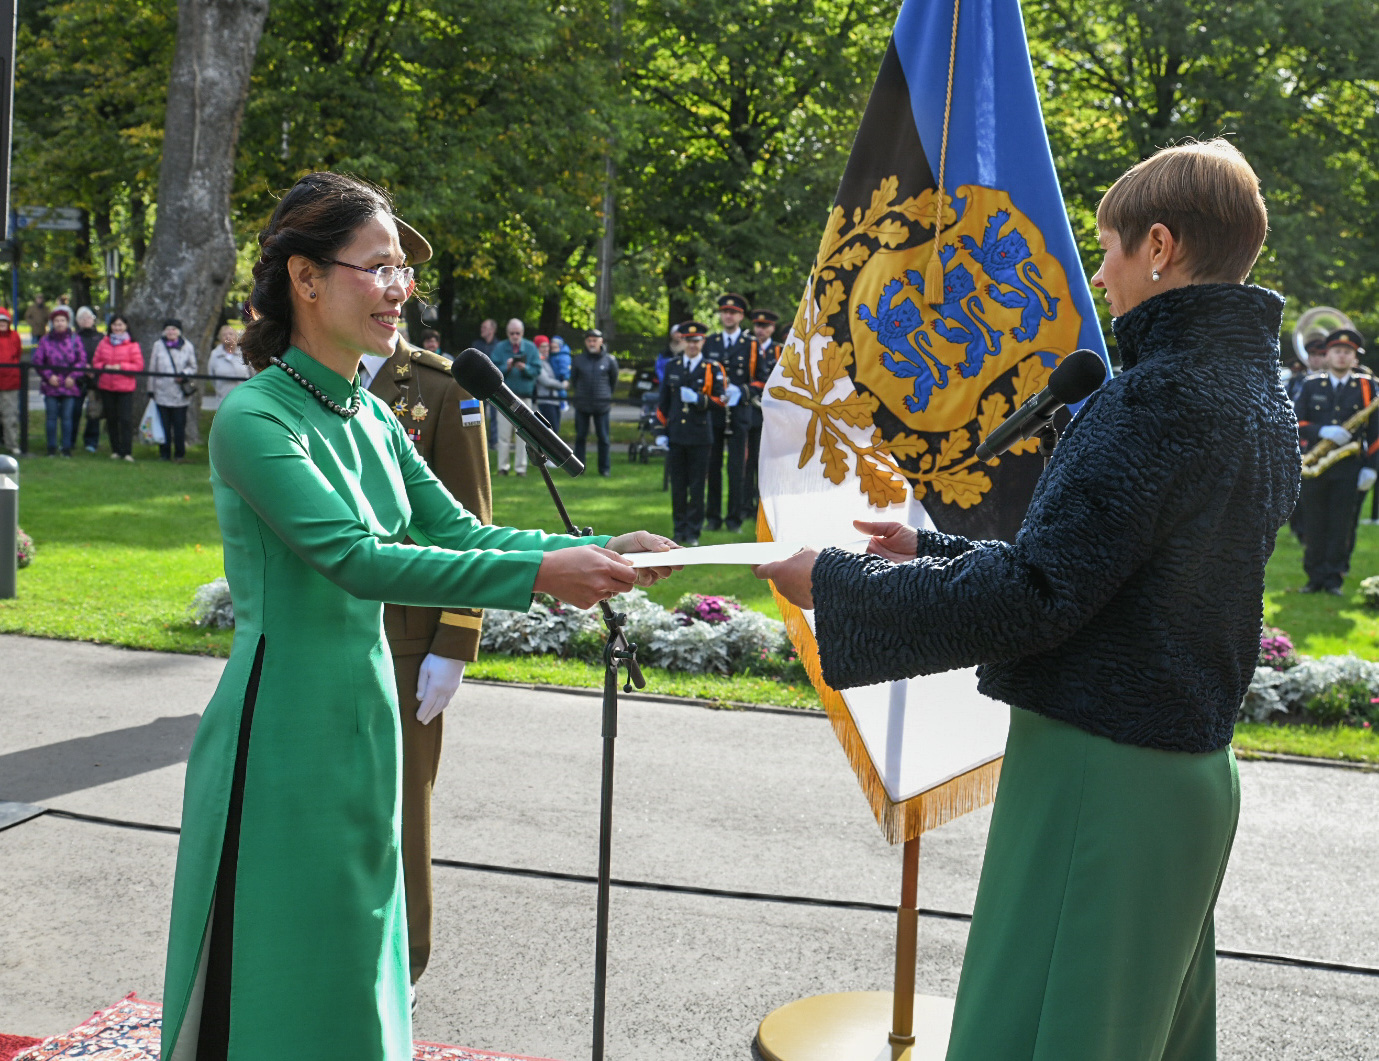 Đại sứ Việt Nam trình Thư ủy nhiệm lên Tổng thống Estonia